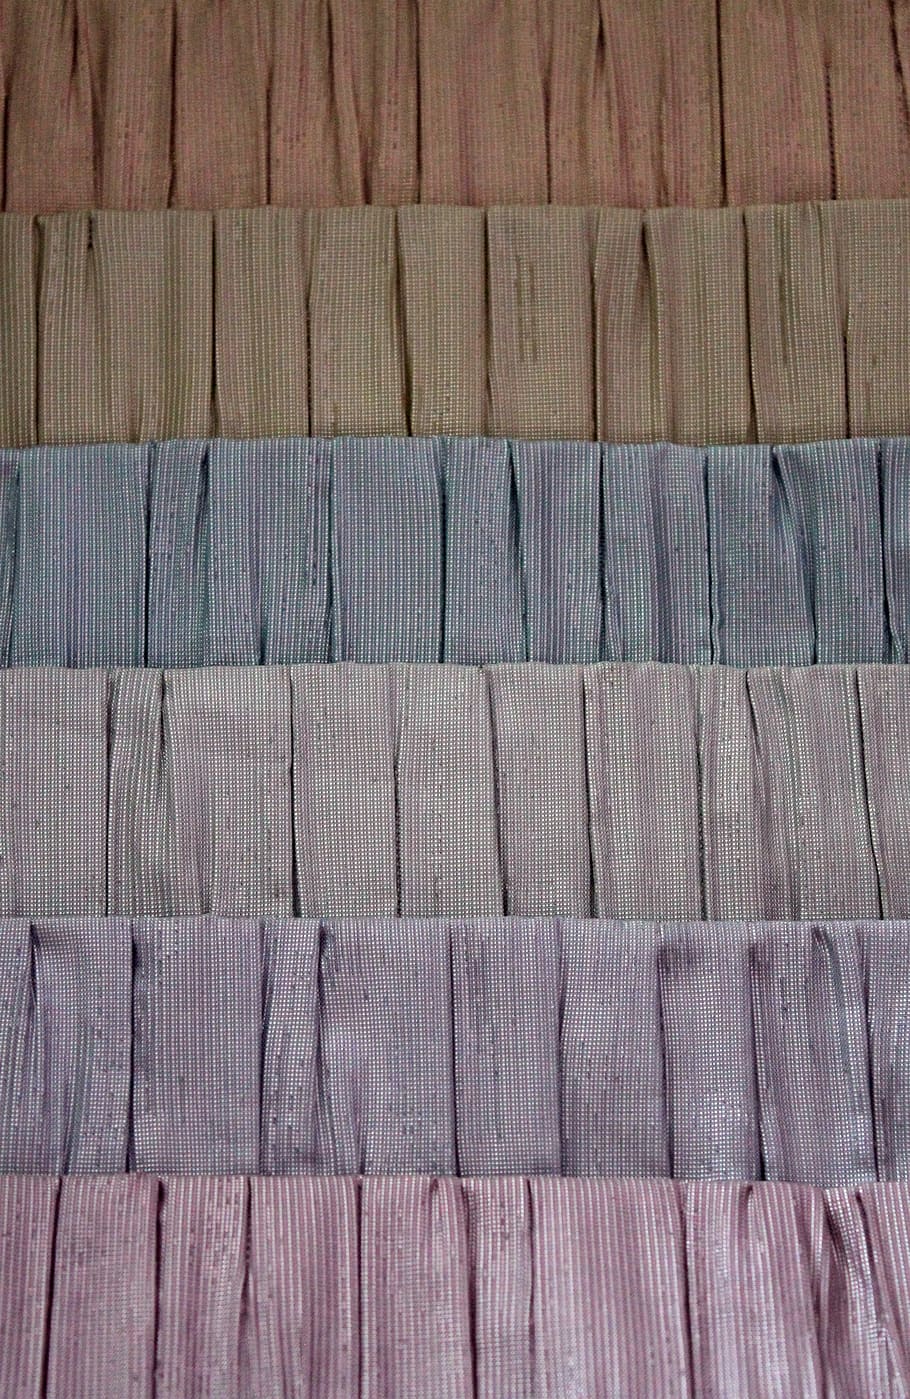 fabric, set, blinds, gradient, multi color, multi colored, compare, comparison, pastel, tone